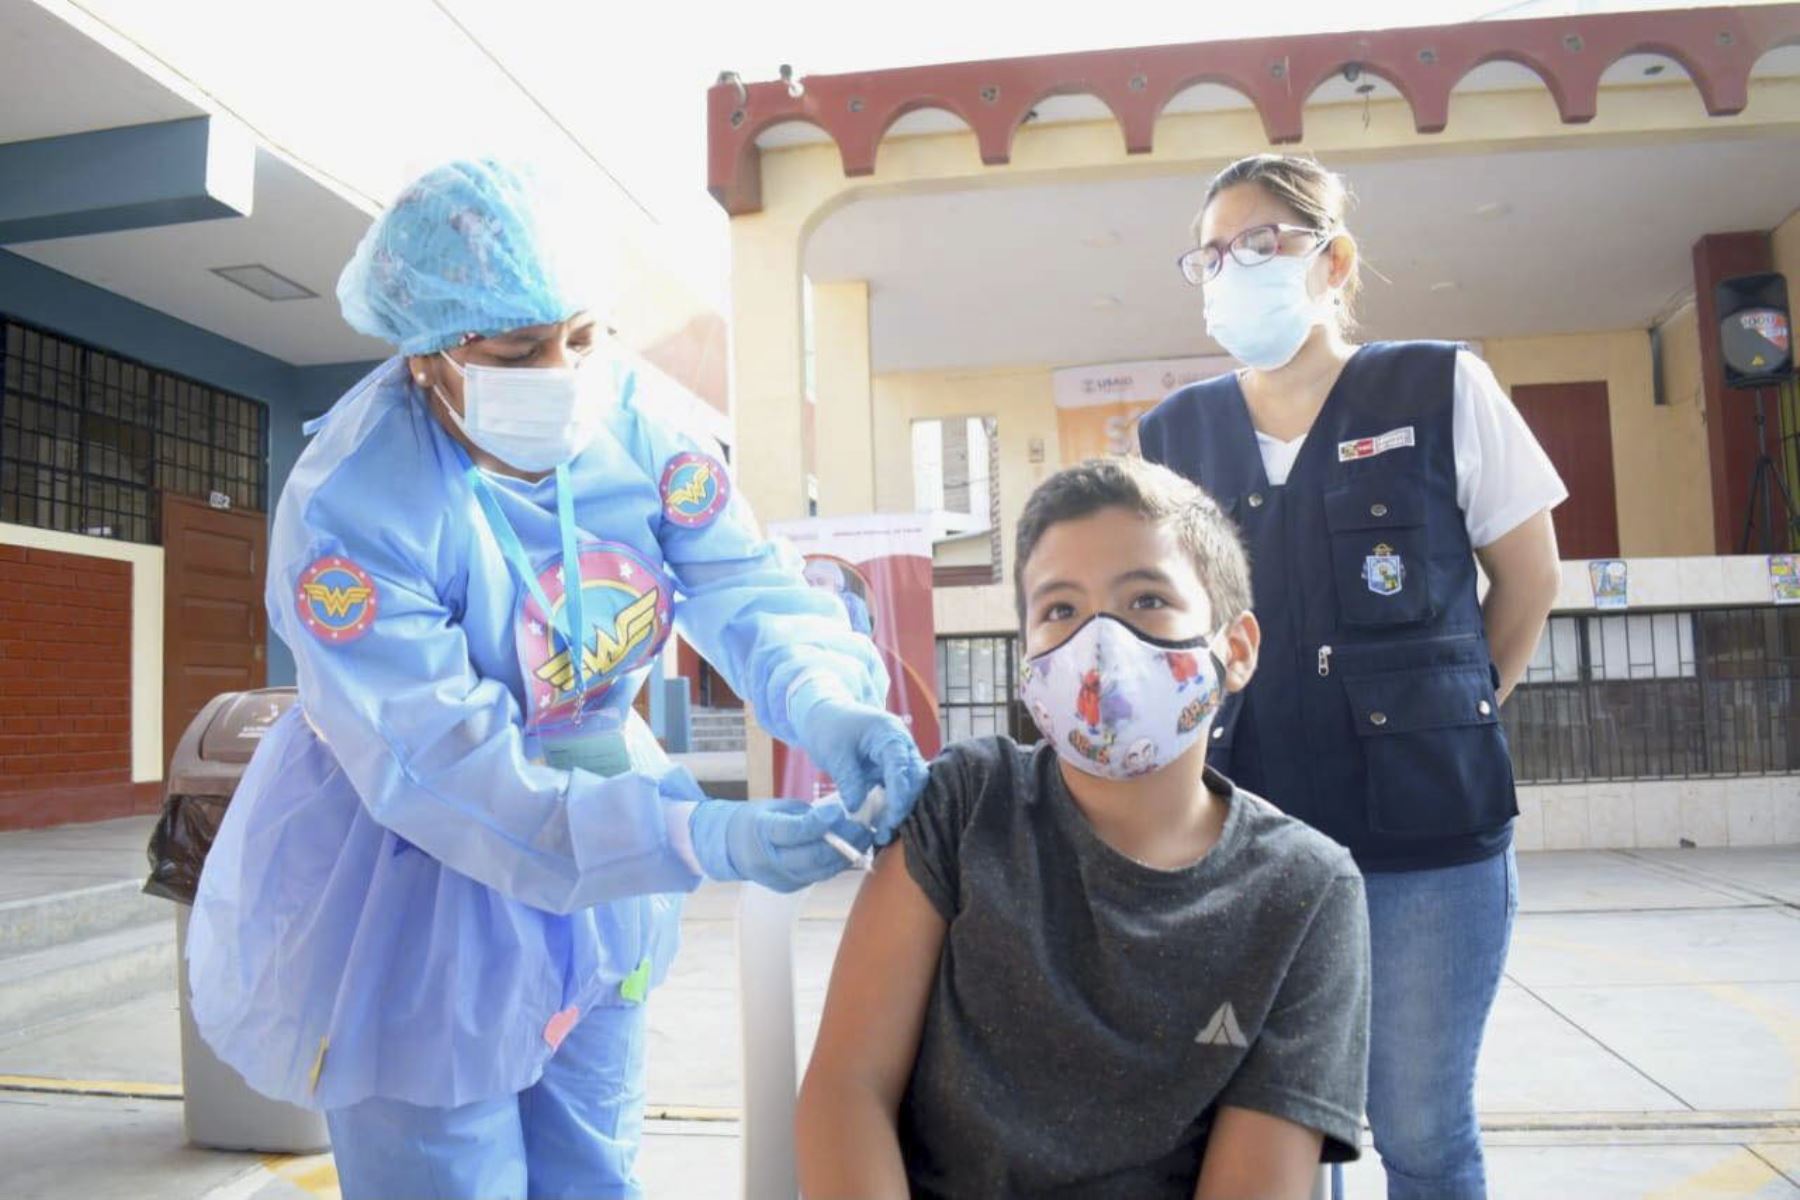 Inició la protección contra el covid 19 a las niñas y niños en Lambayeque. La Gerencia Regional de Salud Lambayeque ha habilitado 19 centros de vacunación de 8 a.m. a 2 p.m. para que los menores puedan recibir su primera dosis. Foto: ANDINA/Minsa